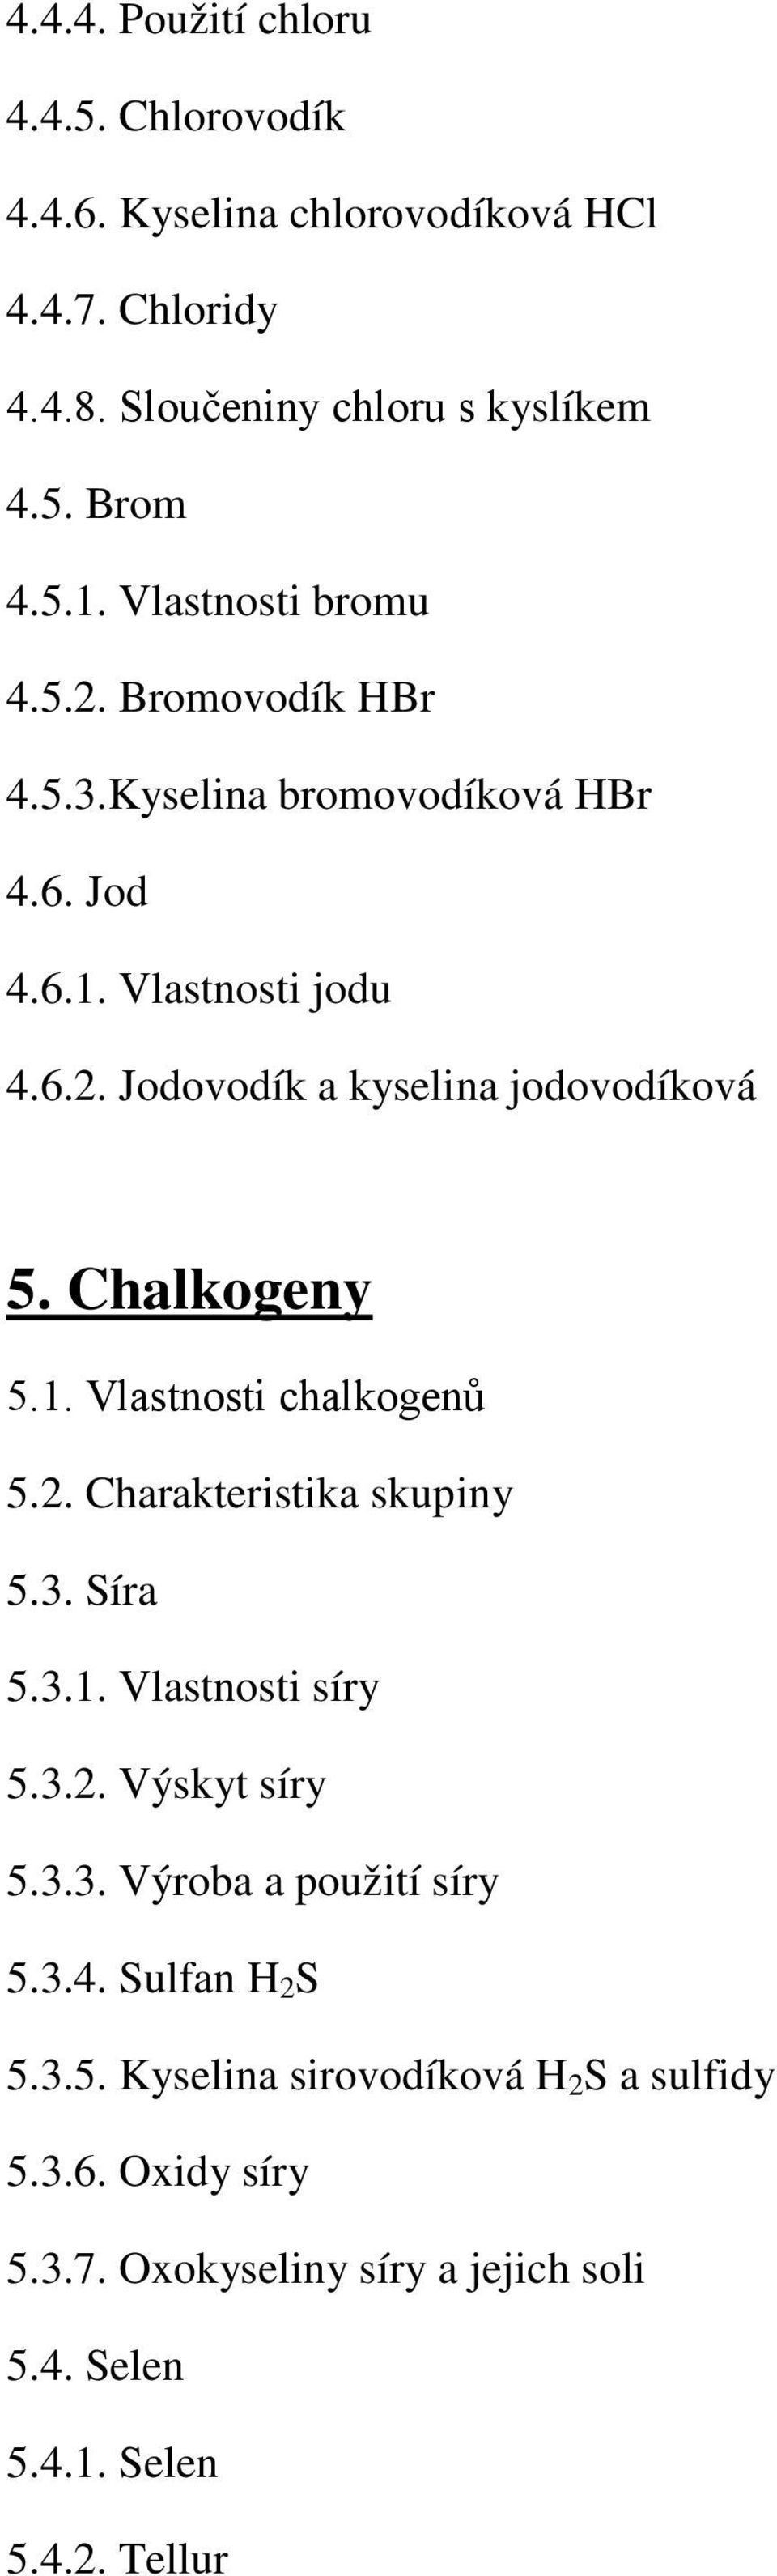 Chalkogeny 5.1. Vlastnosti chalkogenů 5.2. Charakteristika skupiny 5.3. Síra 5.3.1. Vlastnosti síry 5.3.2. Výskyt síry 5.3.3. Výroba a použití síry 5.